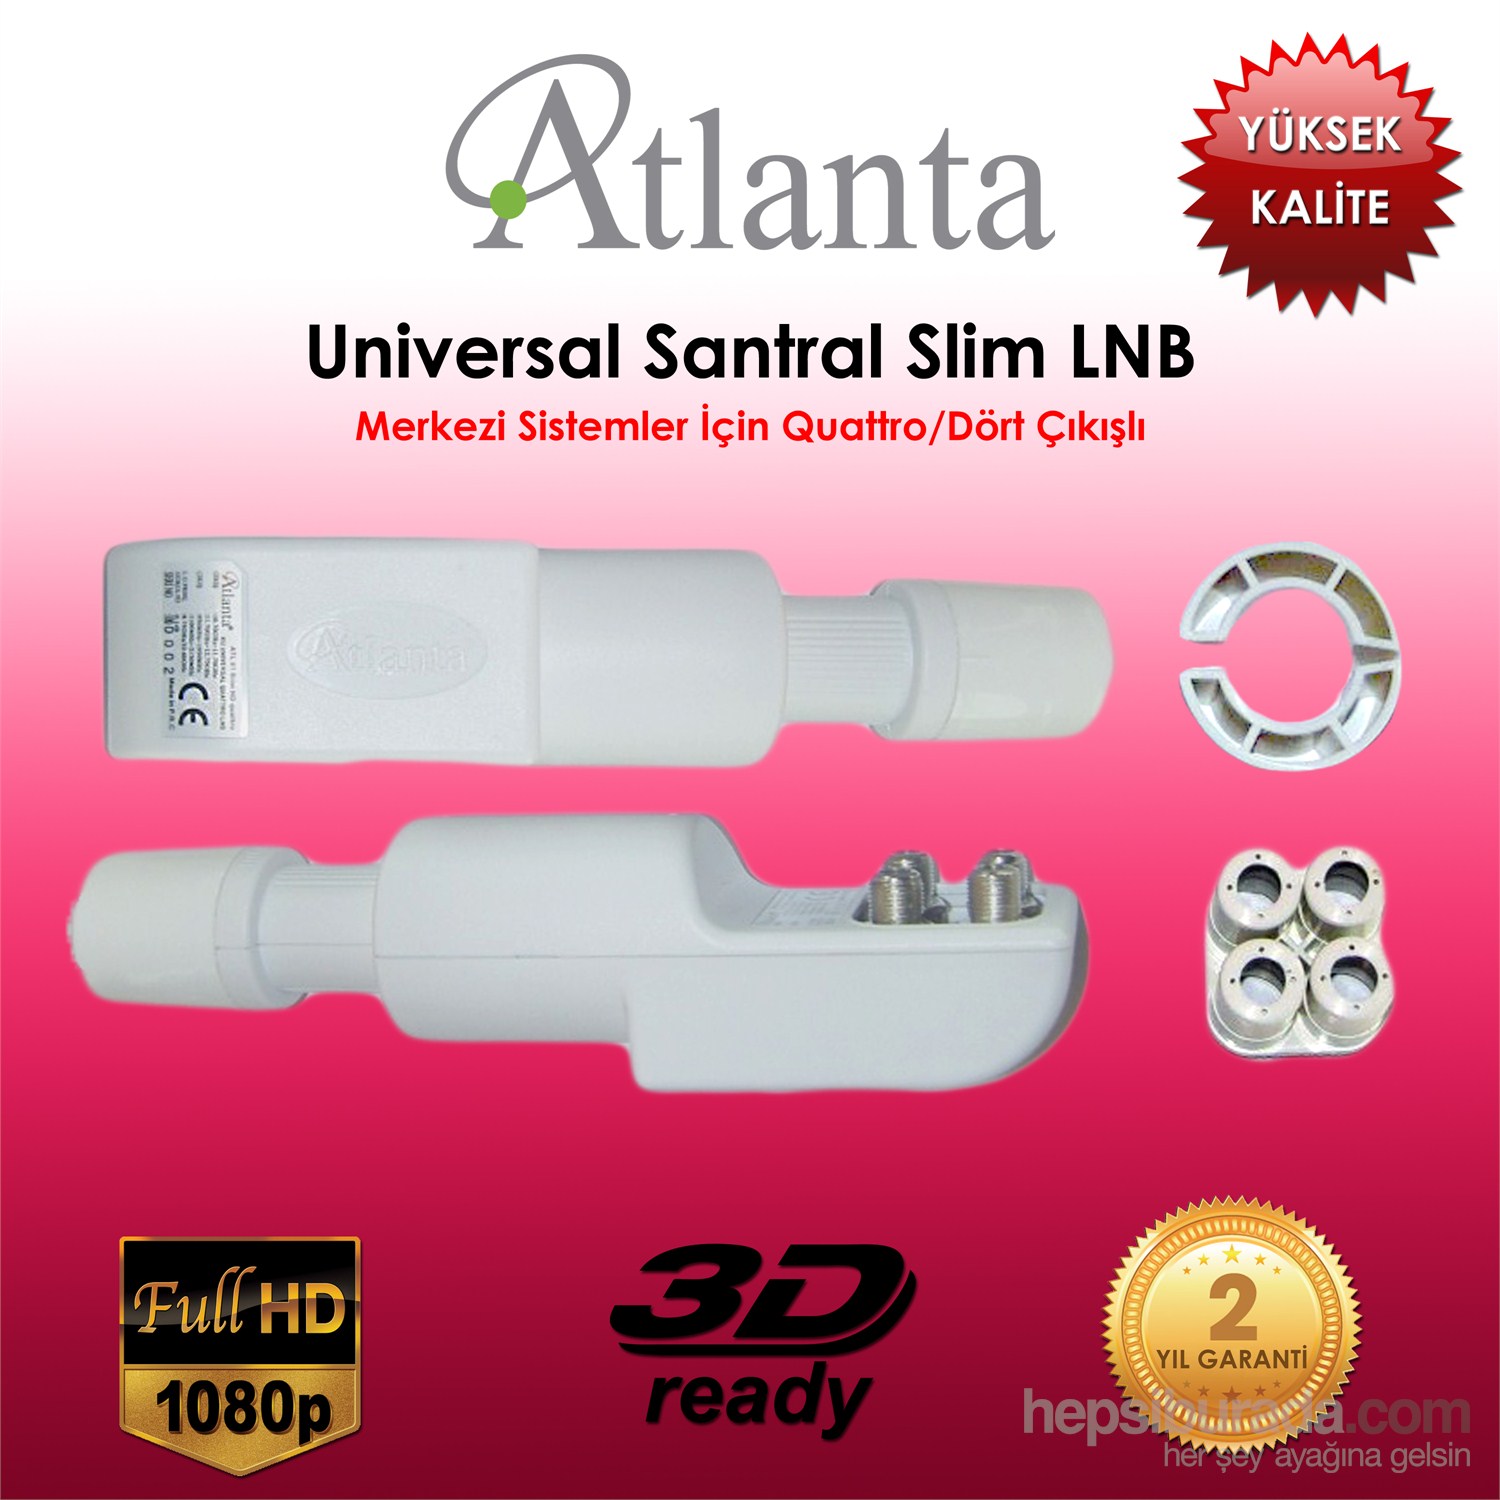 Atlanta Slim Hd Santral Lnb (Quattro -Dört Çıkışlı- Merkezi Sistem İçin)